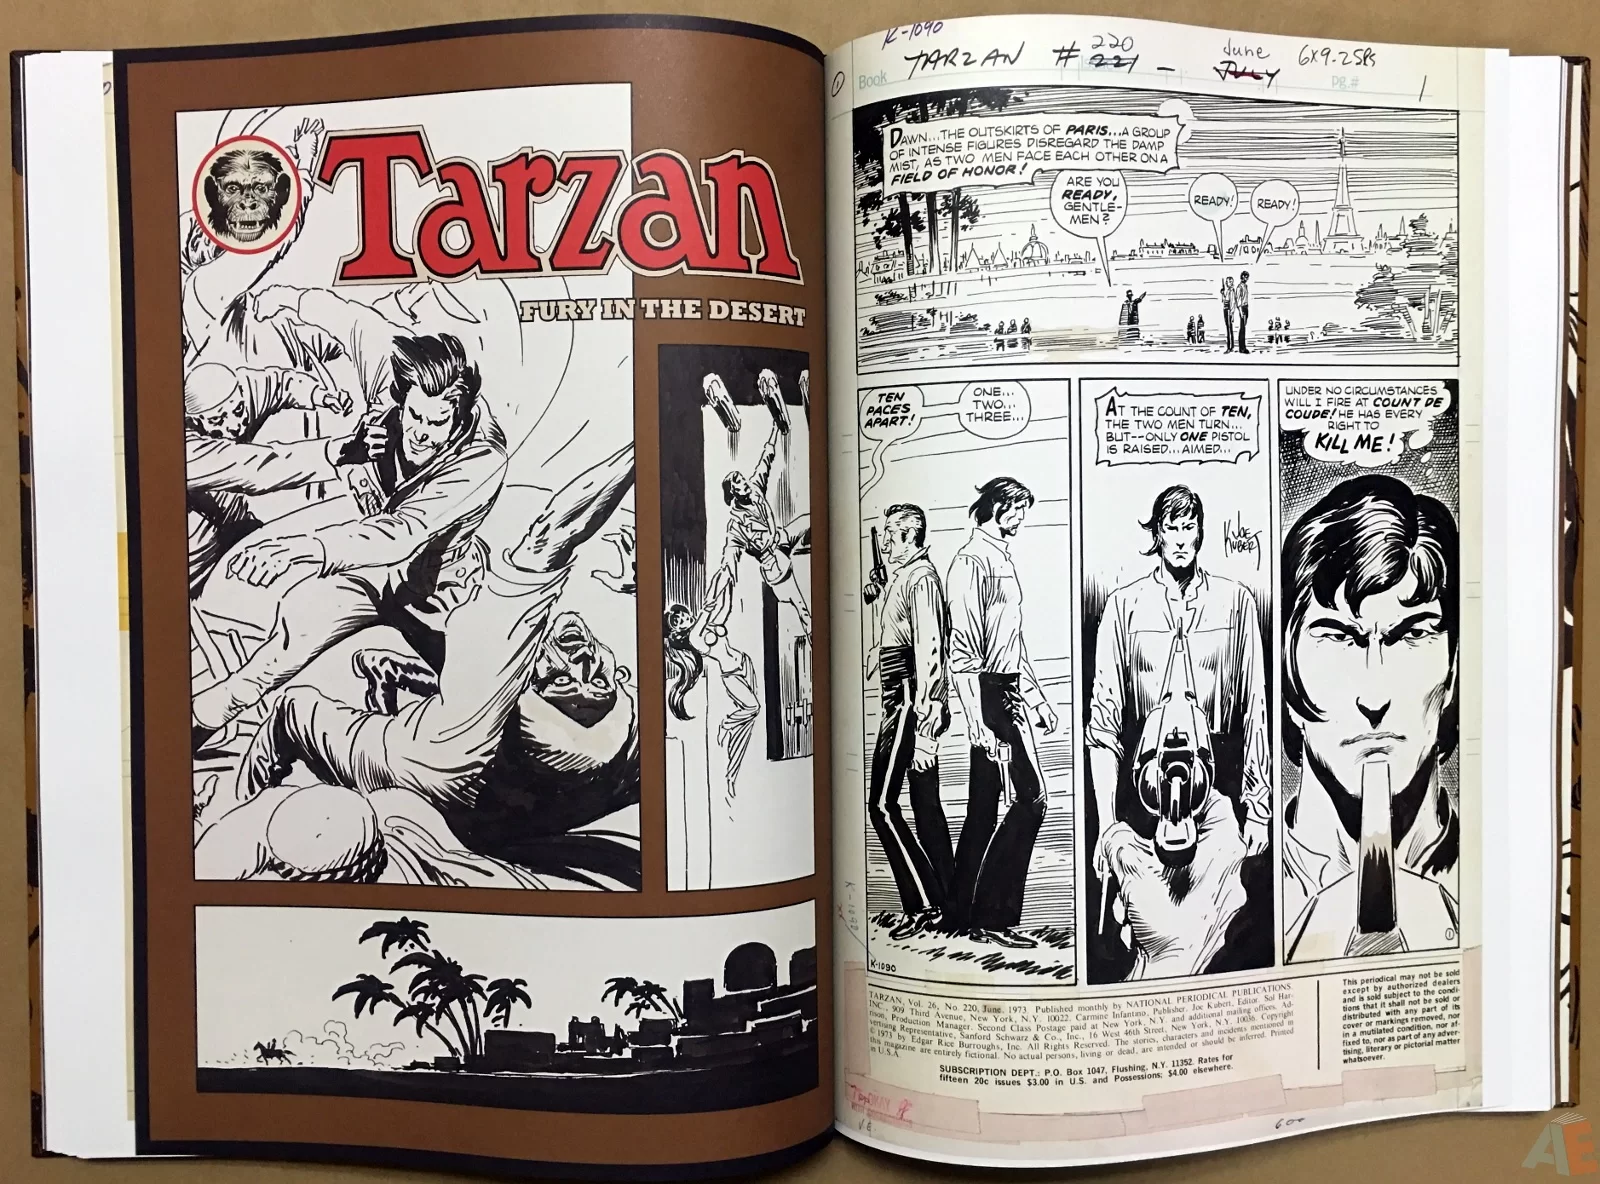 Joe Kubert’s The Return Of Tarzan Artist’s Edition